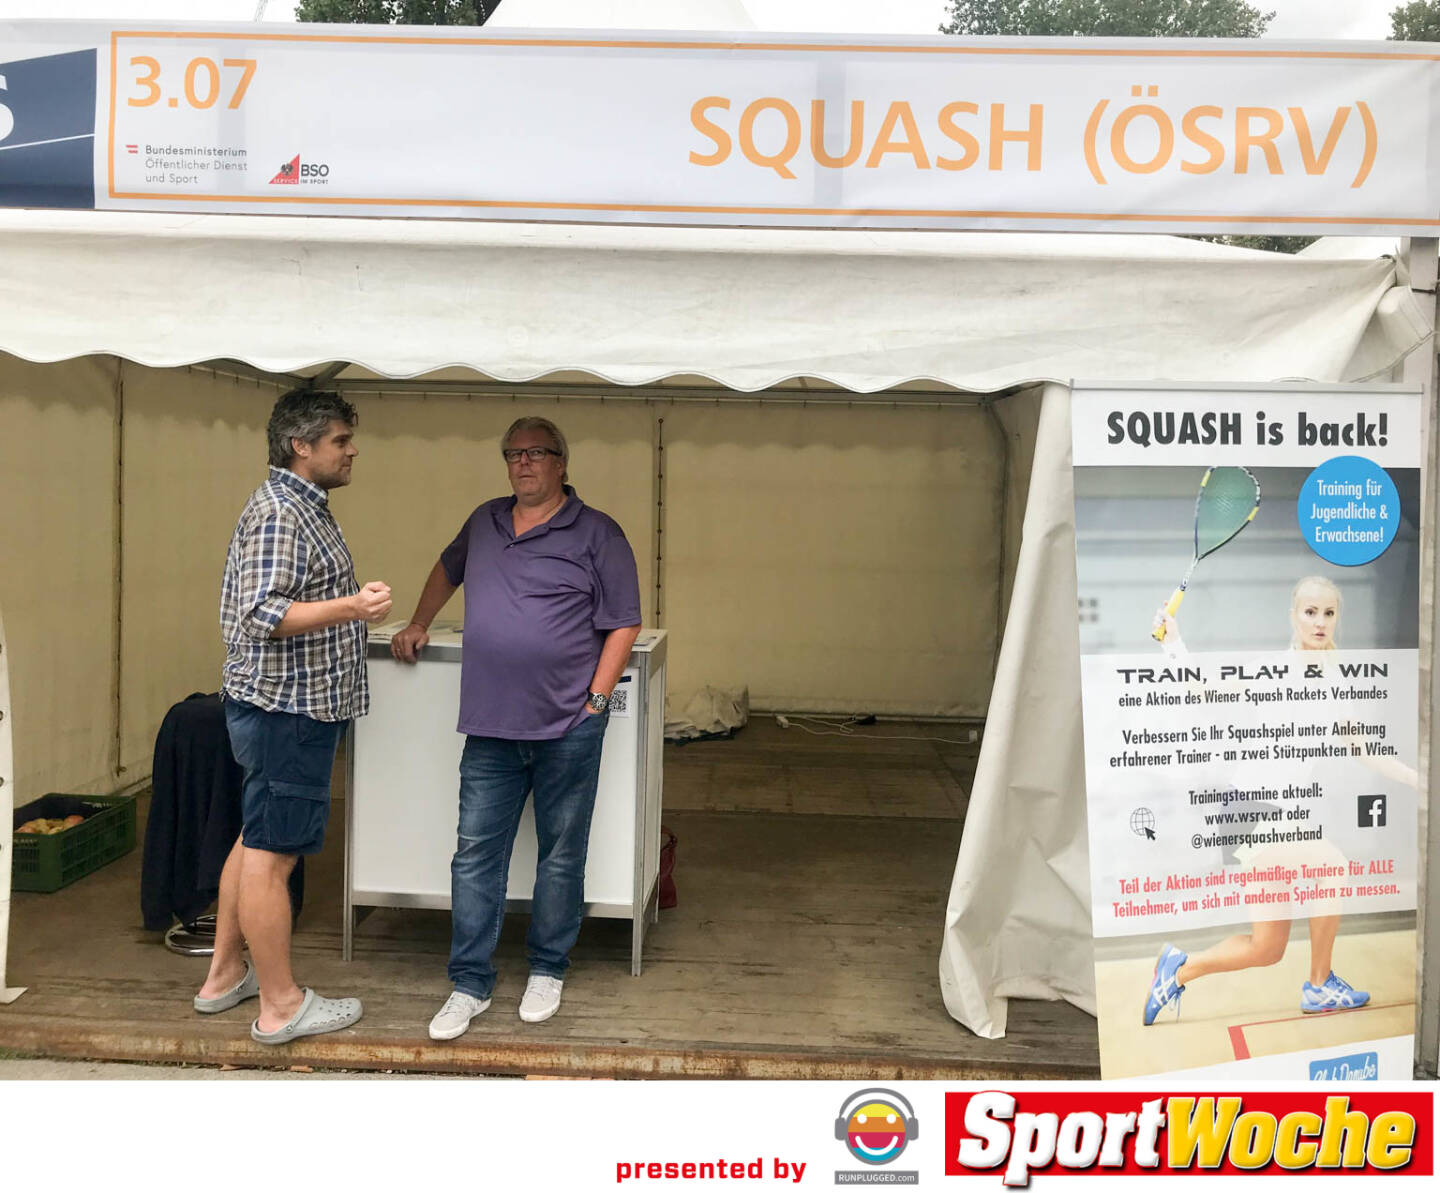 Squash (ÖSRV)